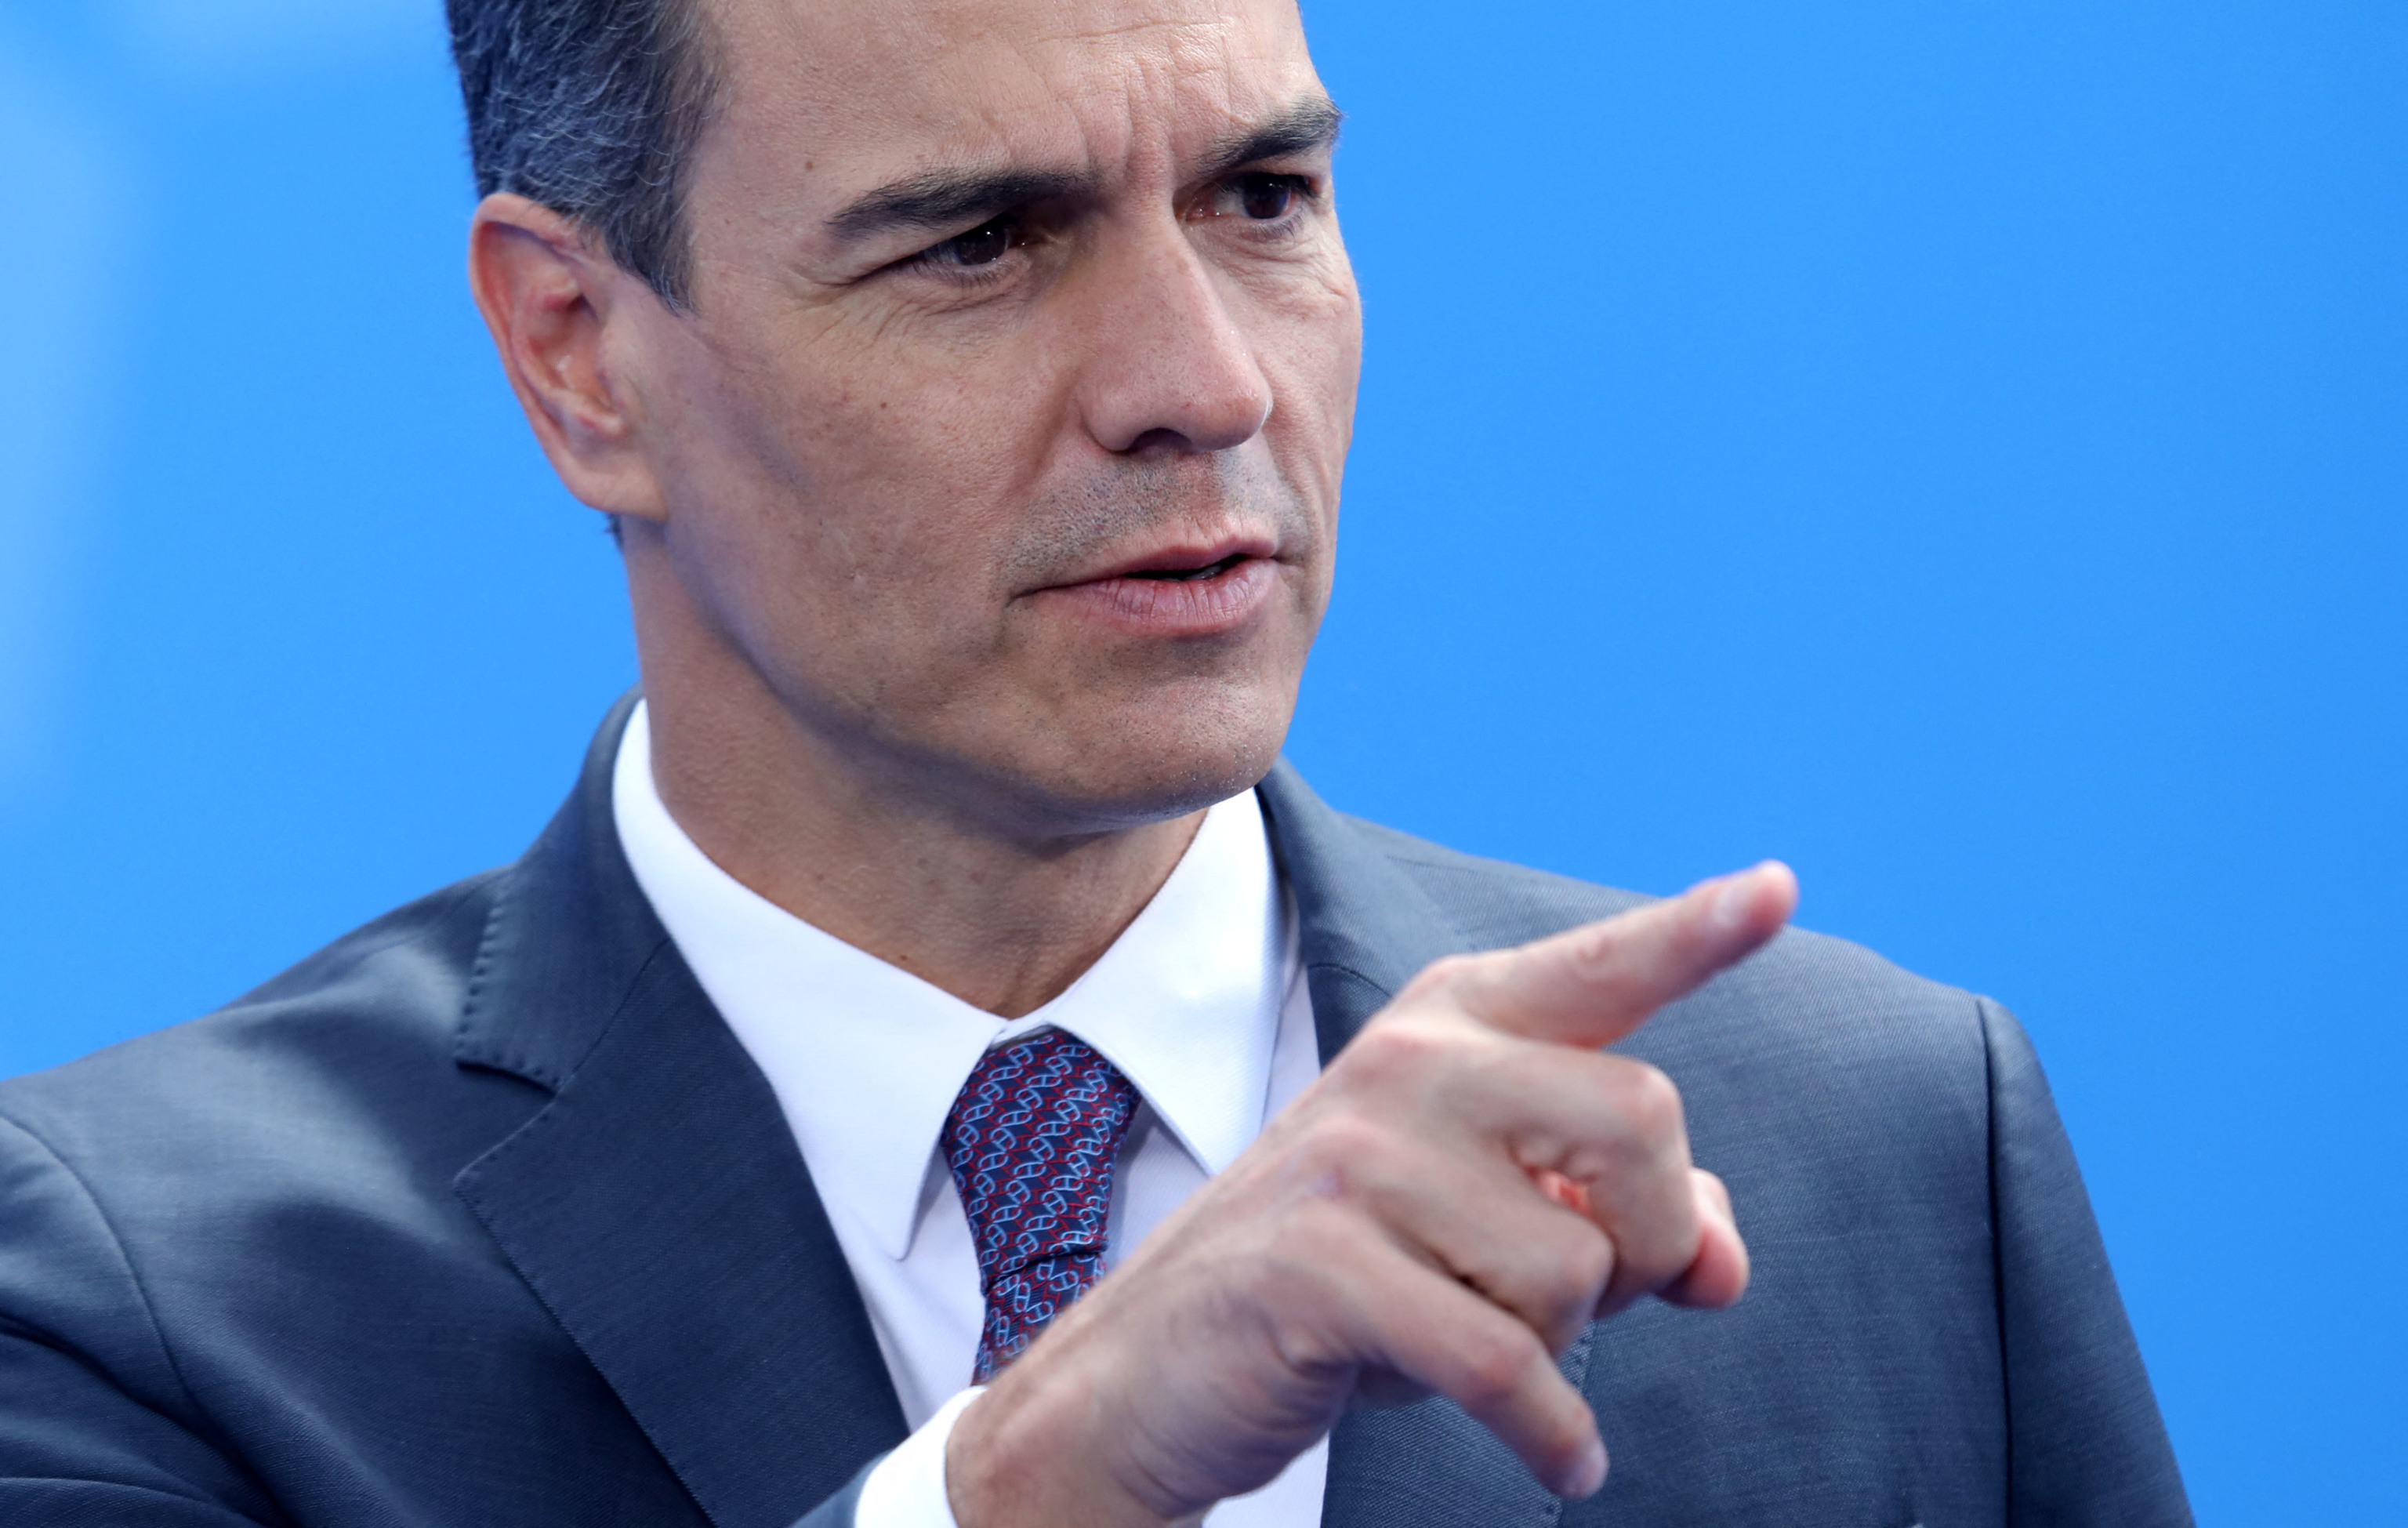 Pedro Sánchez, presidente del Gobierno.